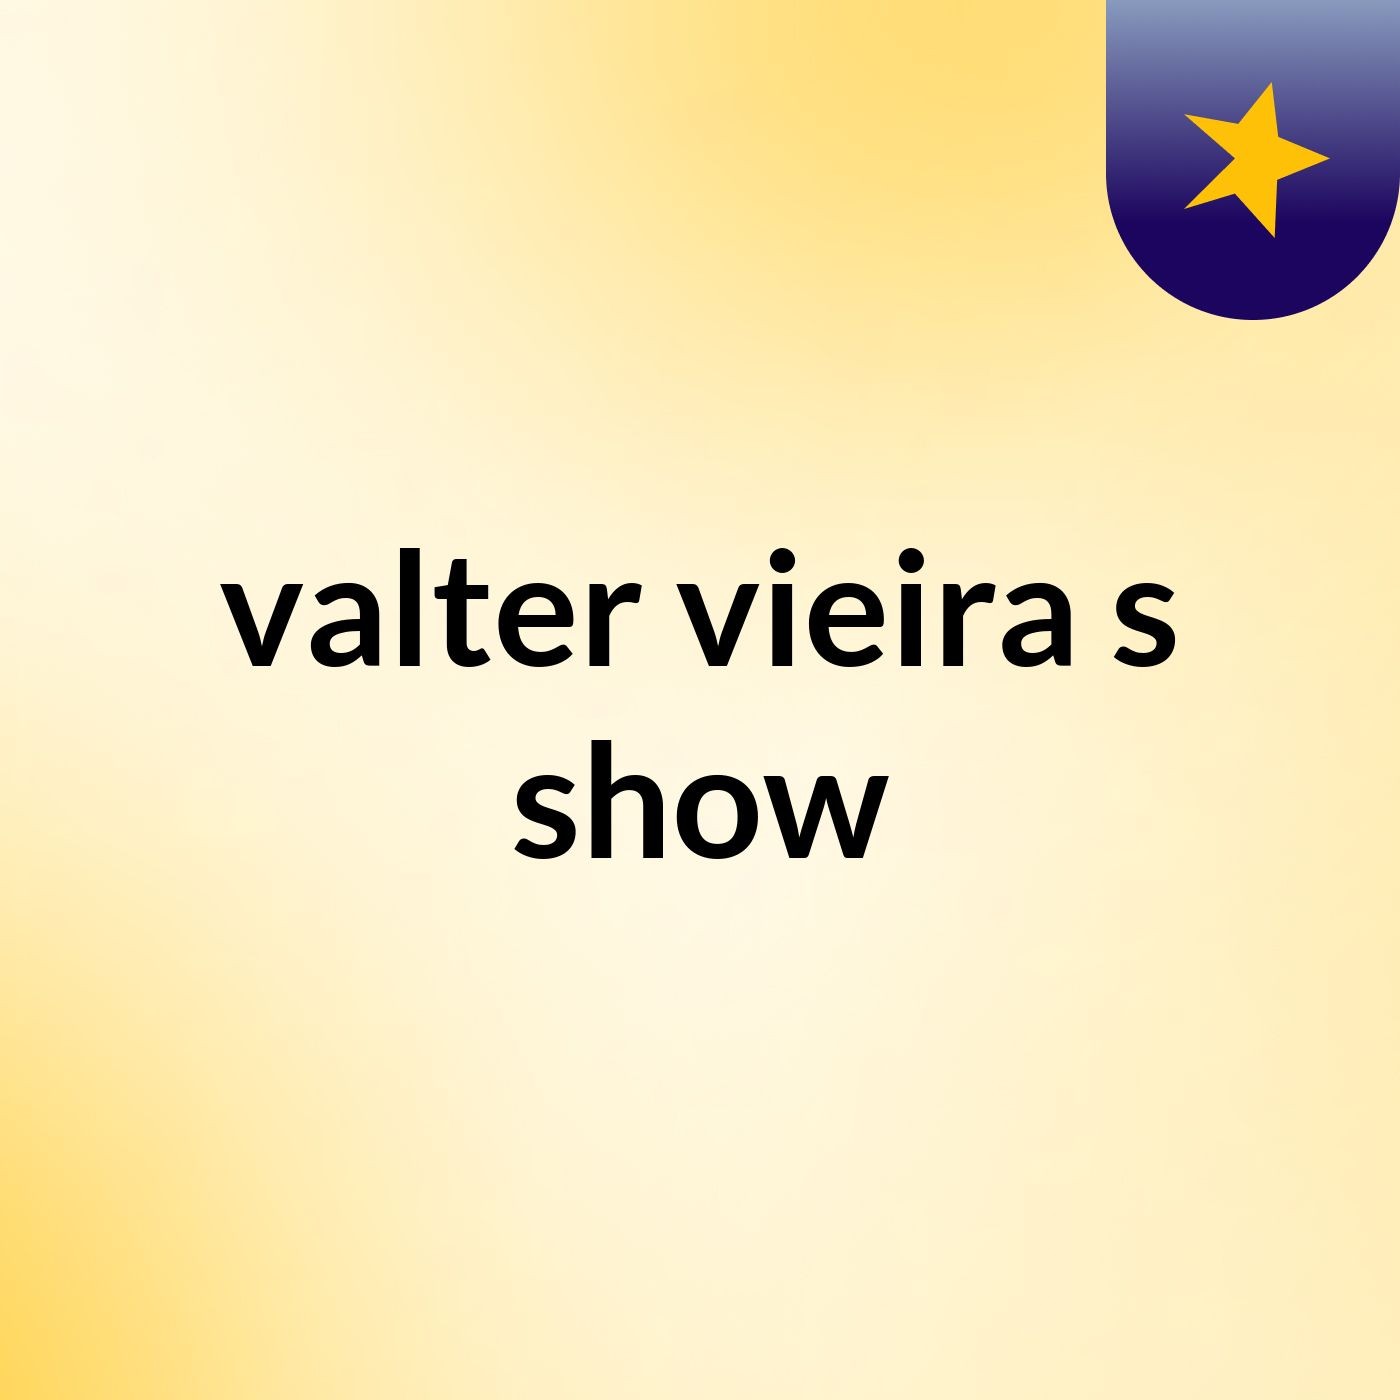 valter vieira's show